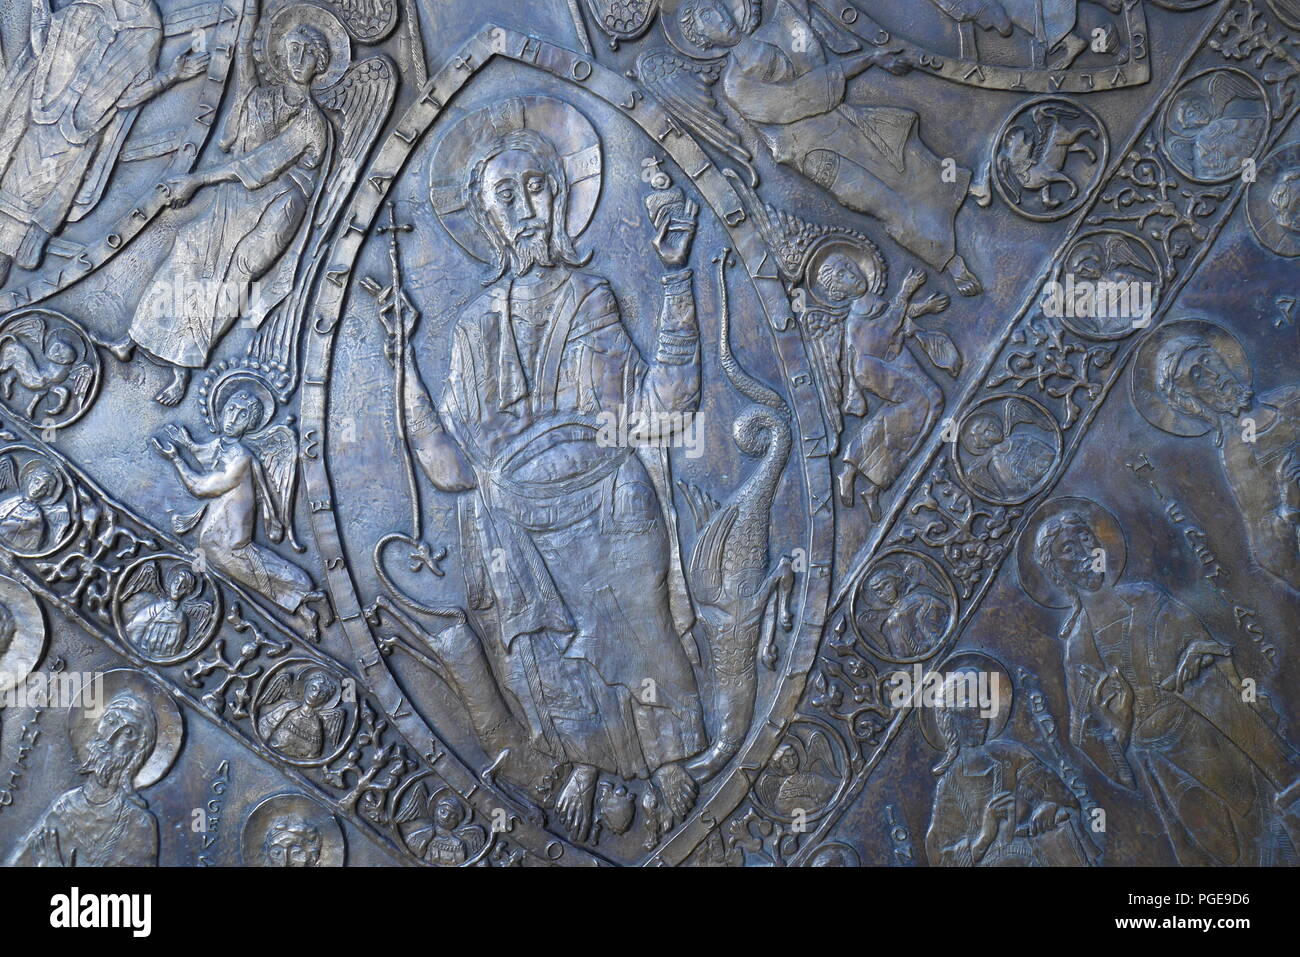 Copie de bronze du manteau du couronnement, détail, portés par les monarques hongrois à Coronation, Eglise St Mary Magdalene, quartier du château, Budapest, Hongrie Banque D'Images